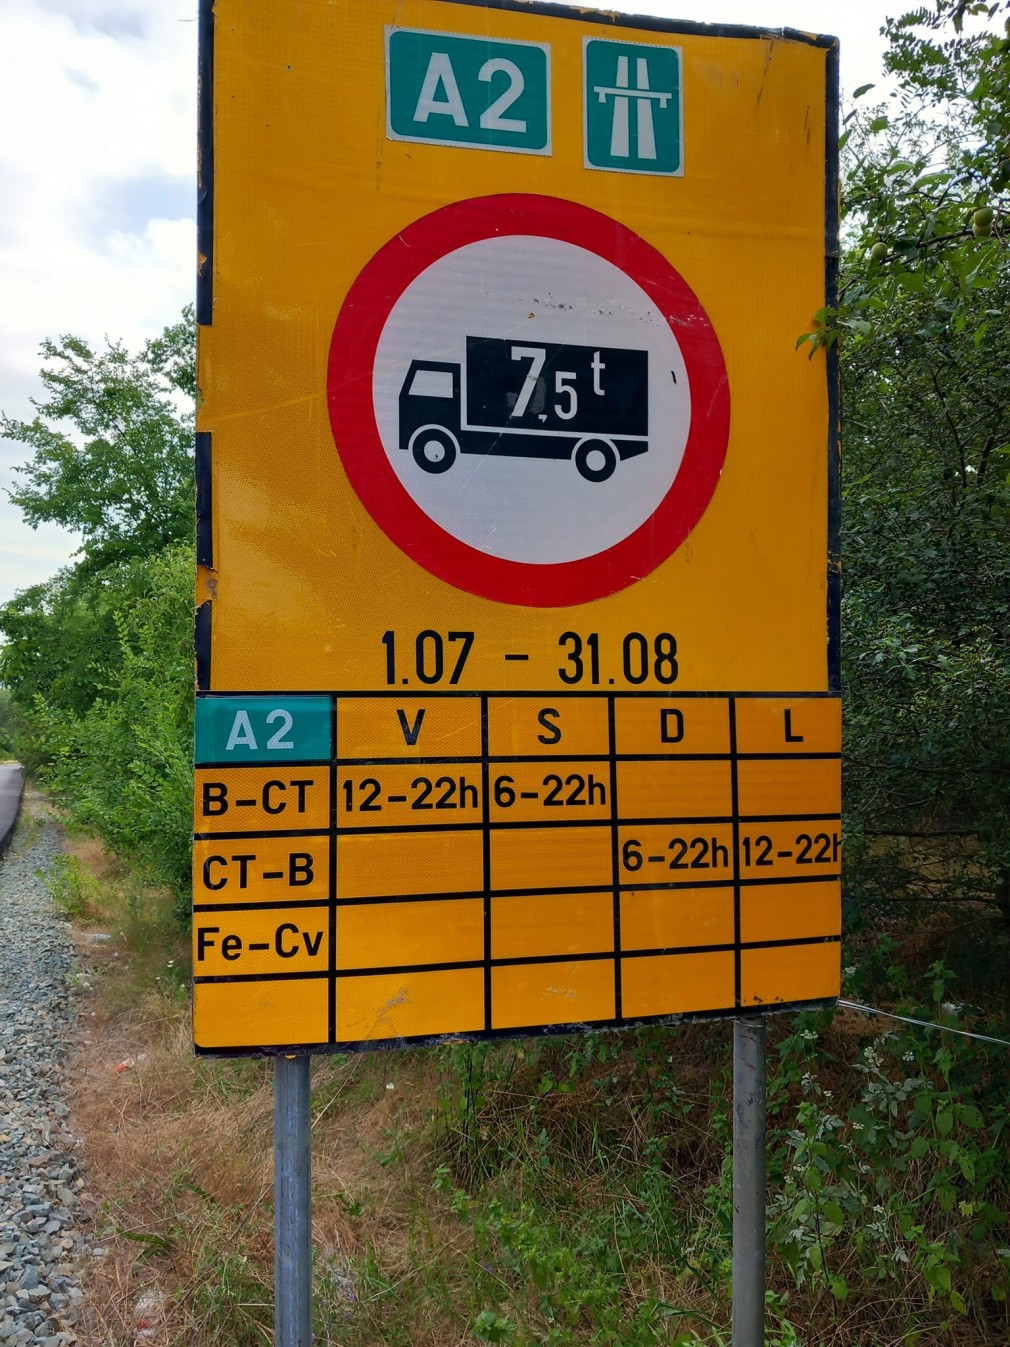 Restricții de circulație pentru camioane pe A2 în iulie și august